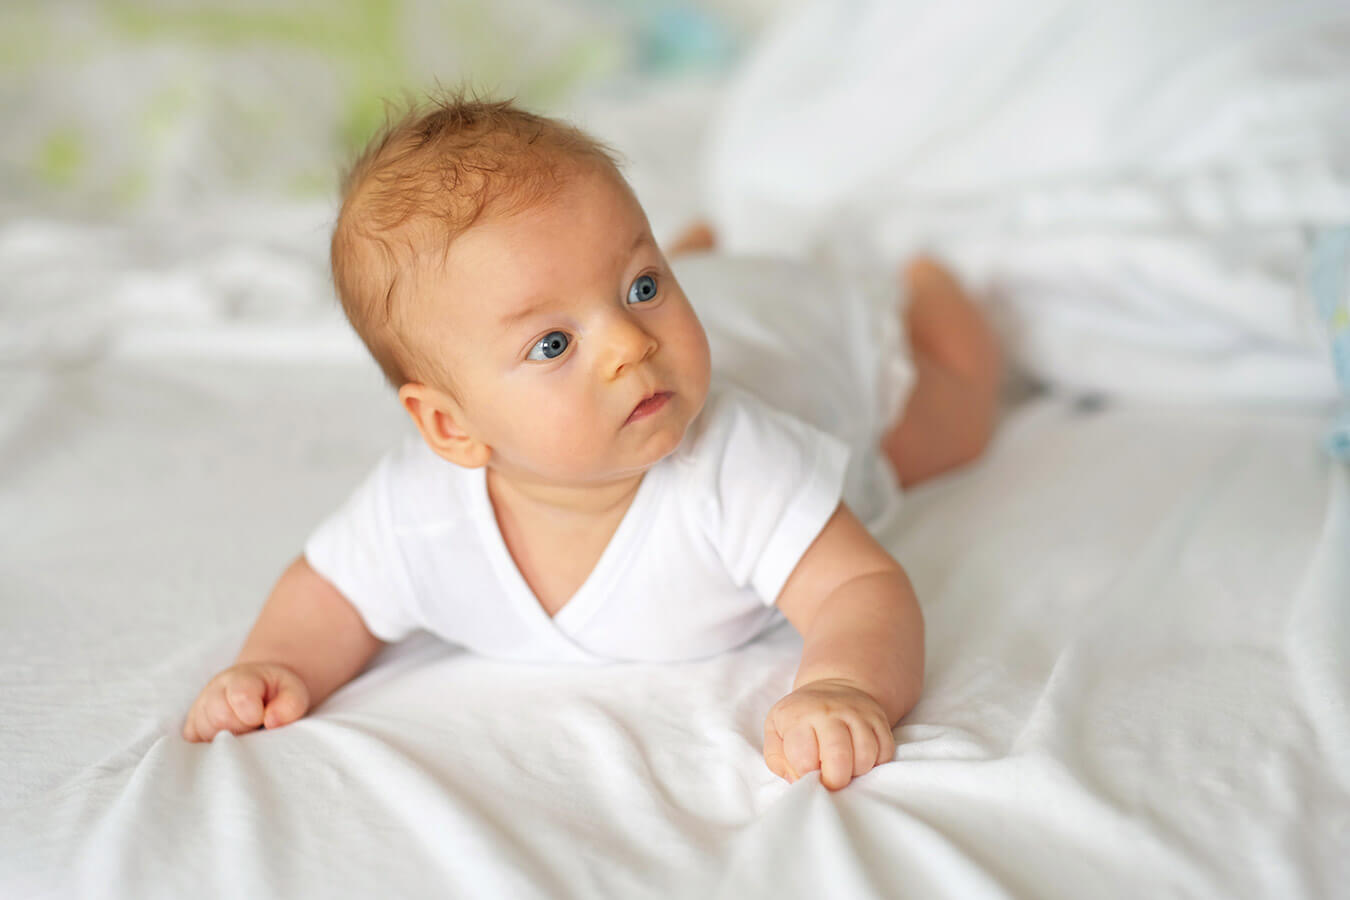 10 tygodniowe dziecko – Jak wygląda 10 tydzień życia dziecka?